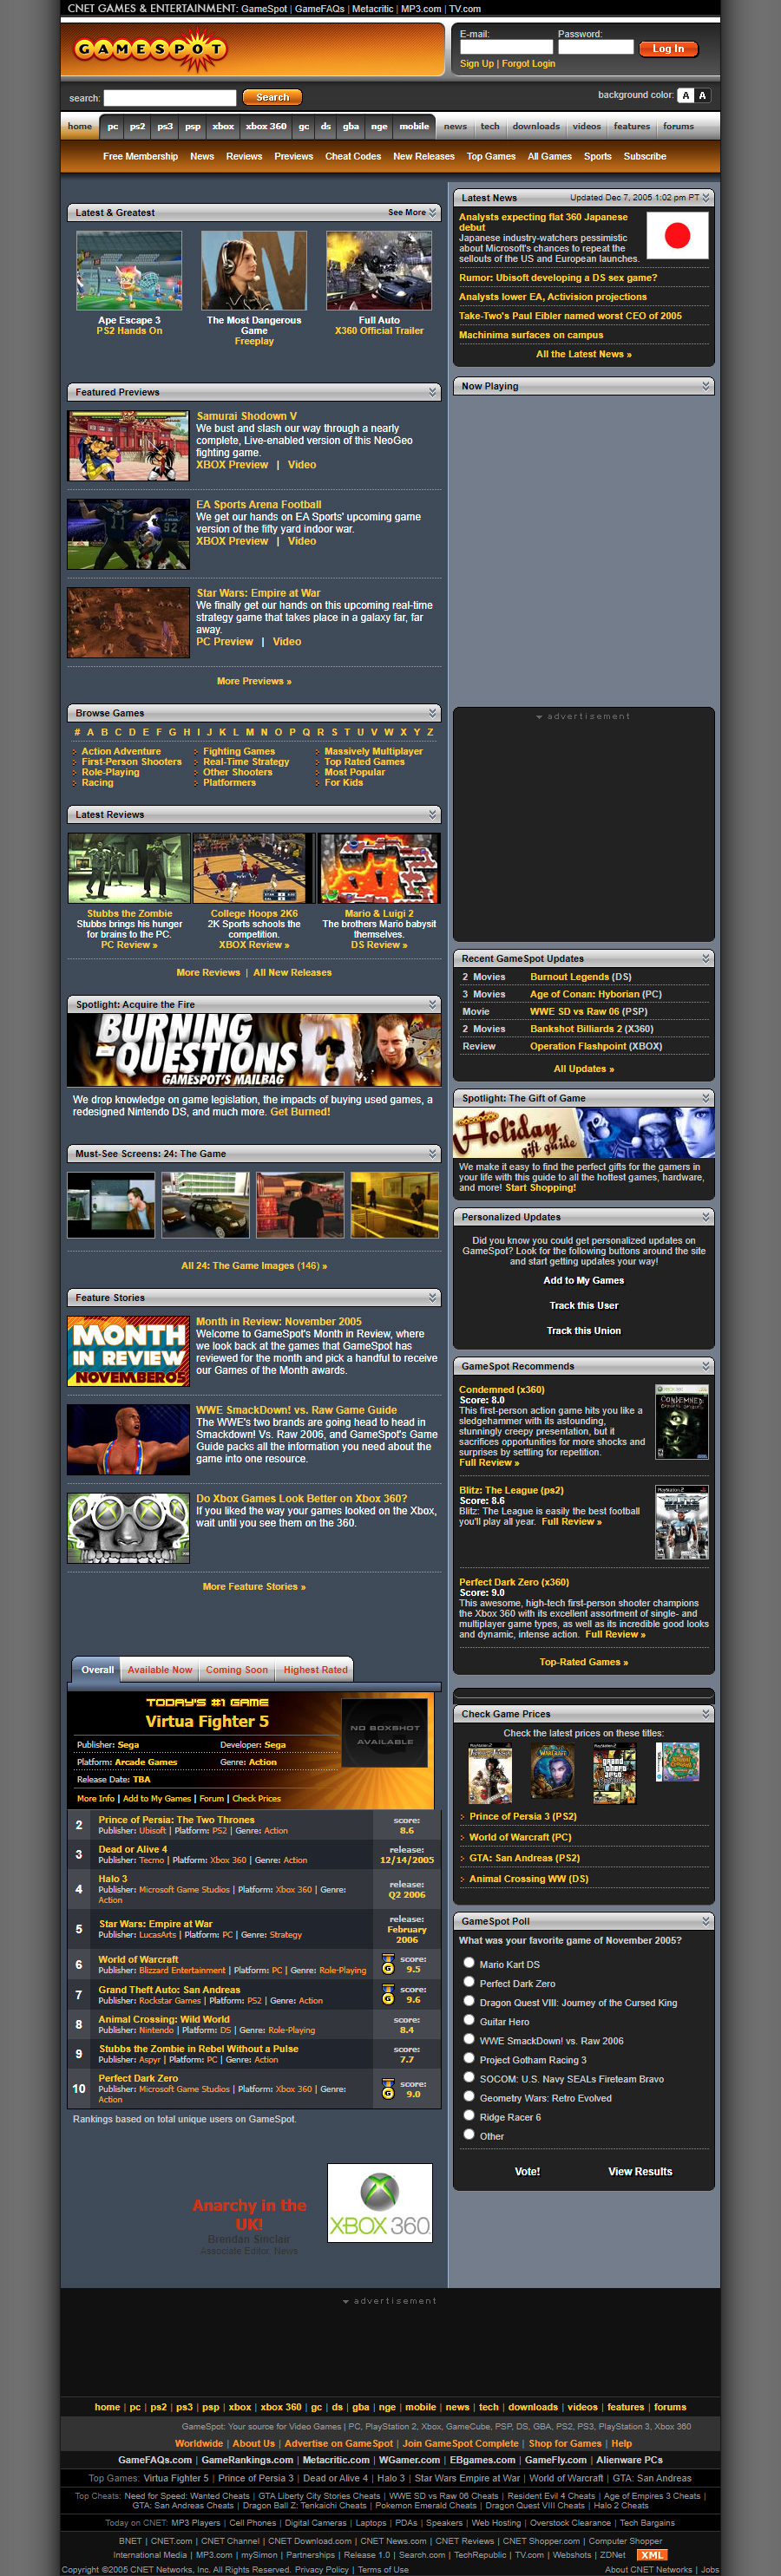 GameSpot website in 2005